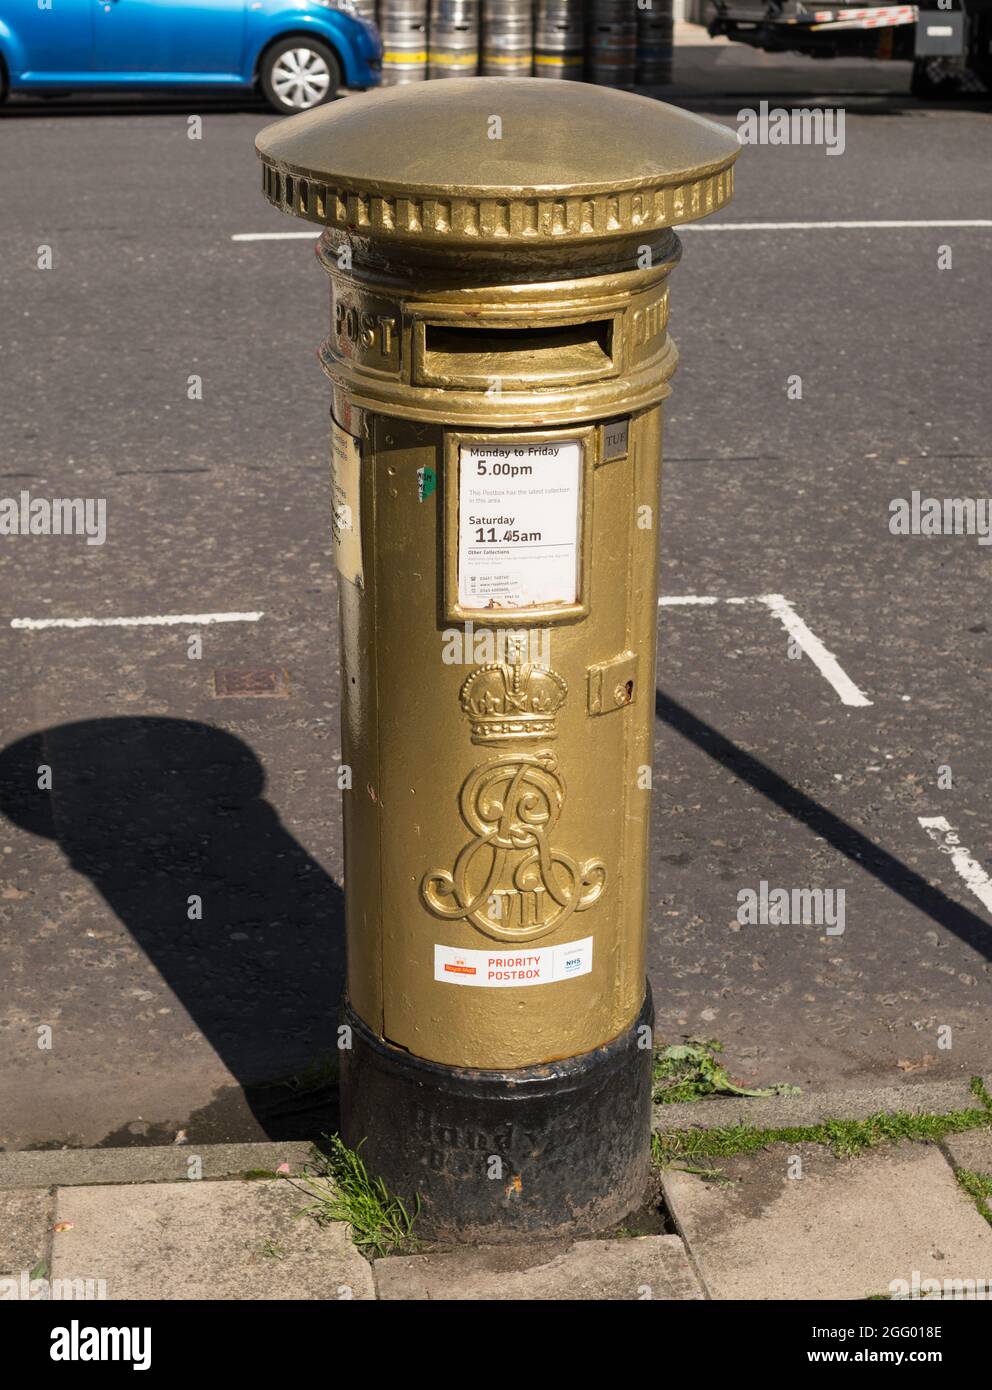 Ein goldbemalter Briefkasten, der die Goldmedaille feiert, die Scott Brash bei den Olympischen Spielen 2012 in Peebles, Scottish Borders, Schottland, gewonnen hat Stockfoto